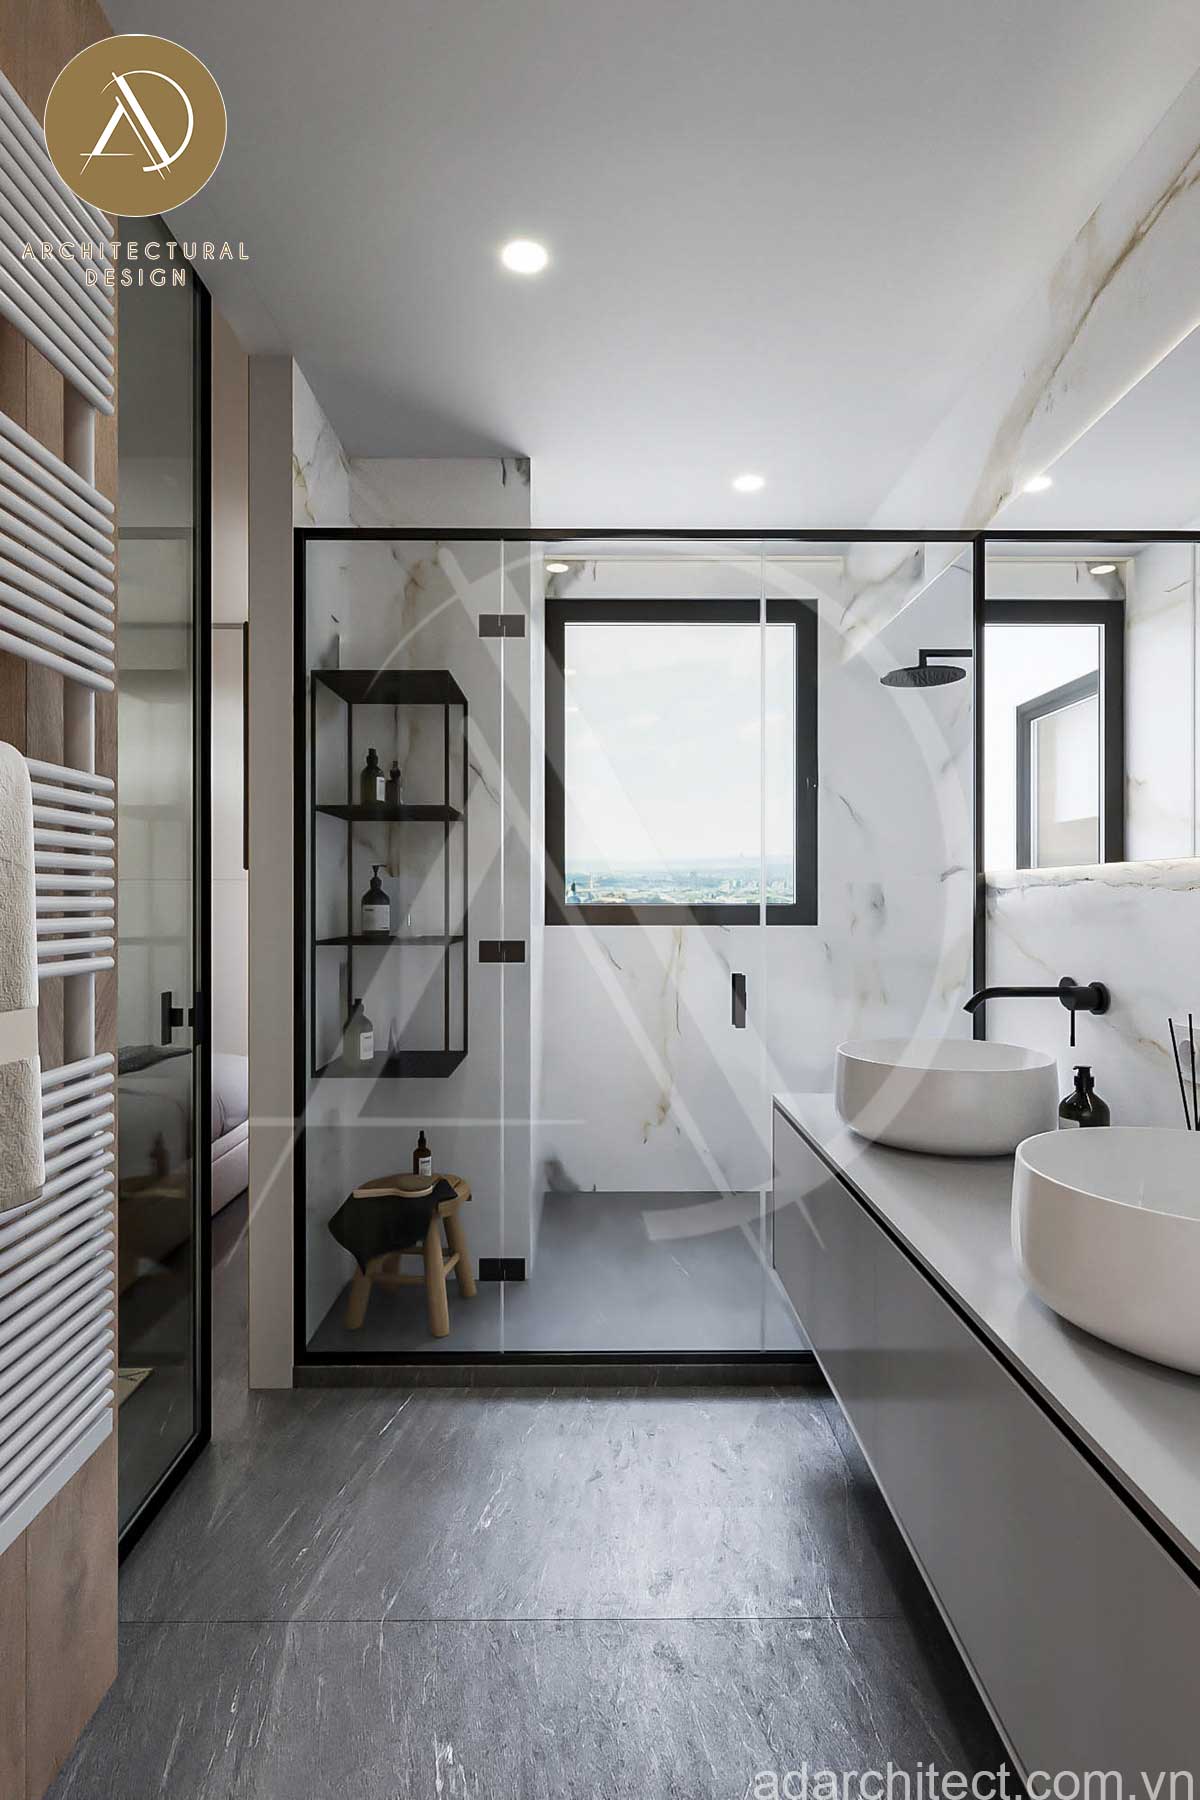 biệt thự 1 tầng 4 phòng ngủ: Thoải mái khi vệ sinh cá nhân với hai bồn rửa tay, bồn tắm đứng rộng rãi